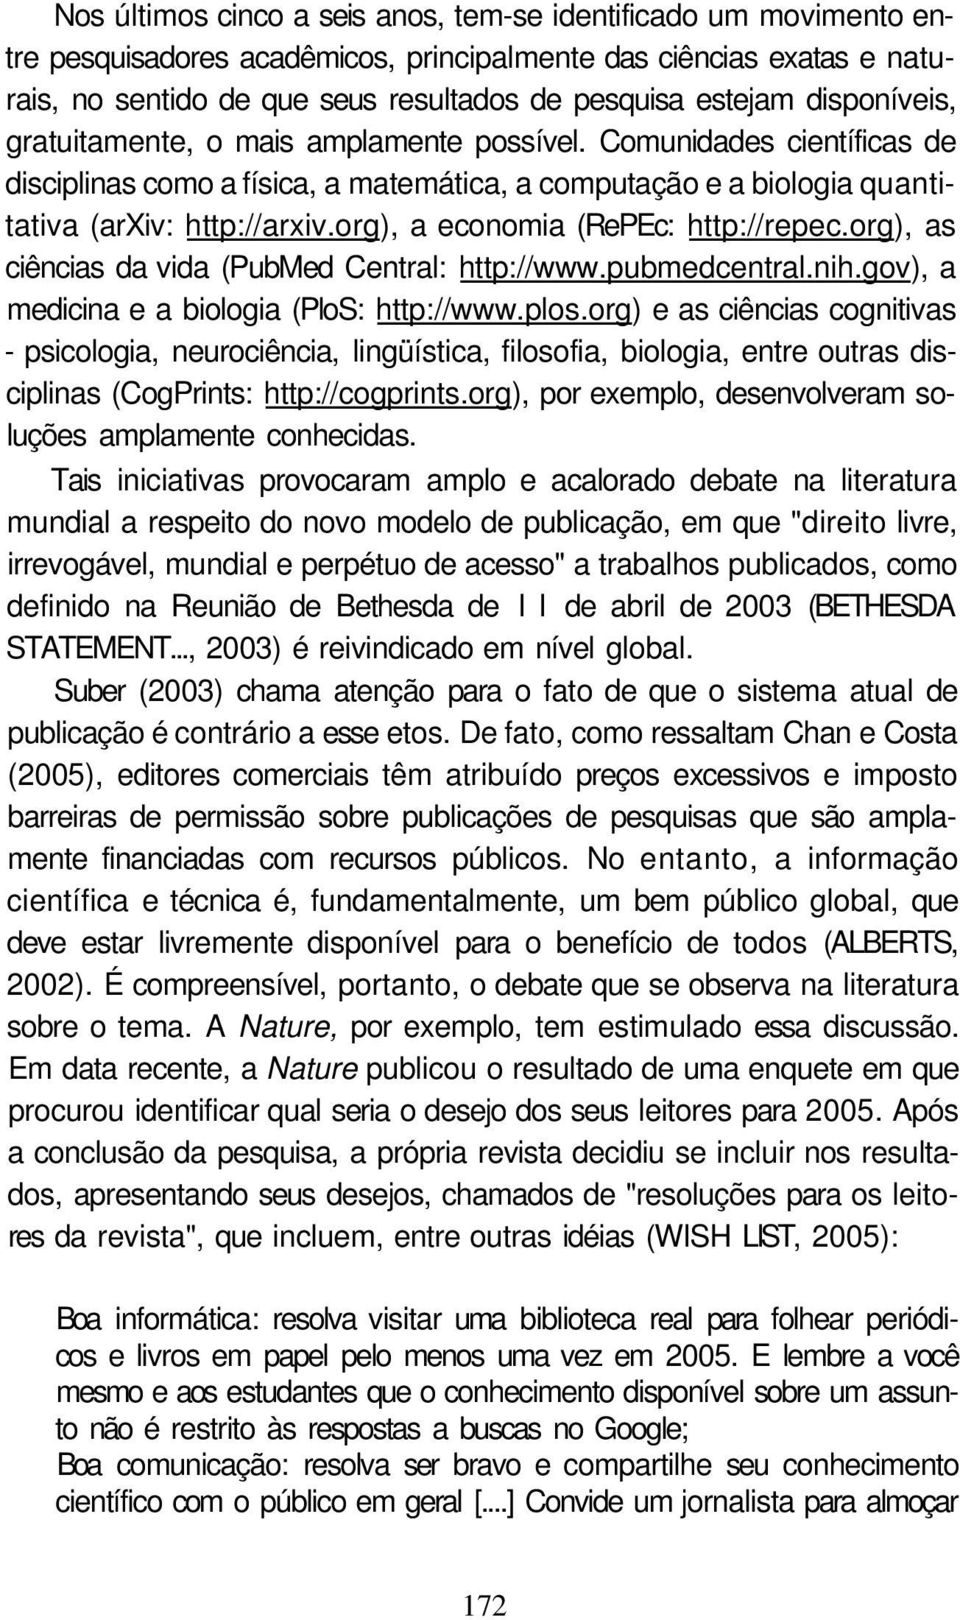 org), a economia (RePEc: http://repec.org), as ciências da vida (PubMed Central: http://www.pubmedcentral.nih.gov), a medicina e a biologia (PloS: http://www.plos.